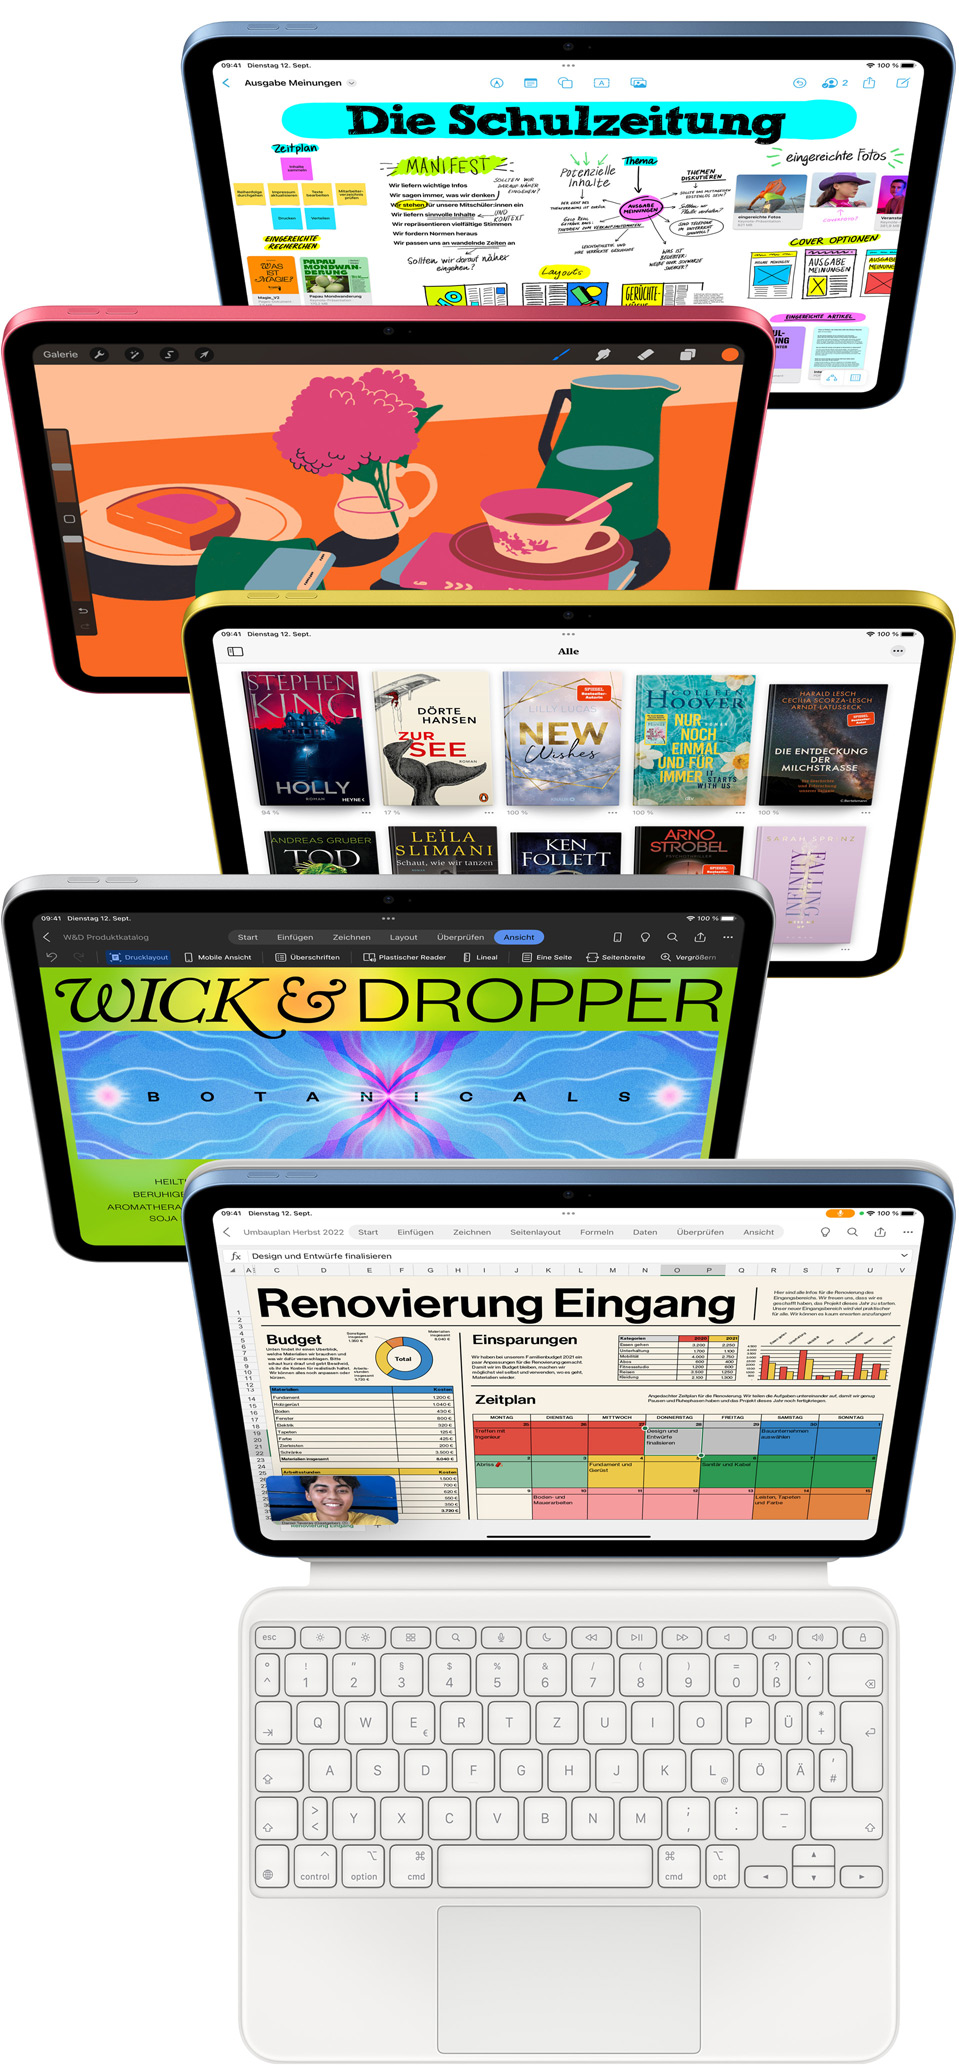 Vorderansicht von iPad Displays zeigt verschiedene Apple Apps und App Store Apps.